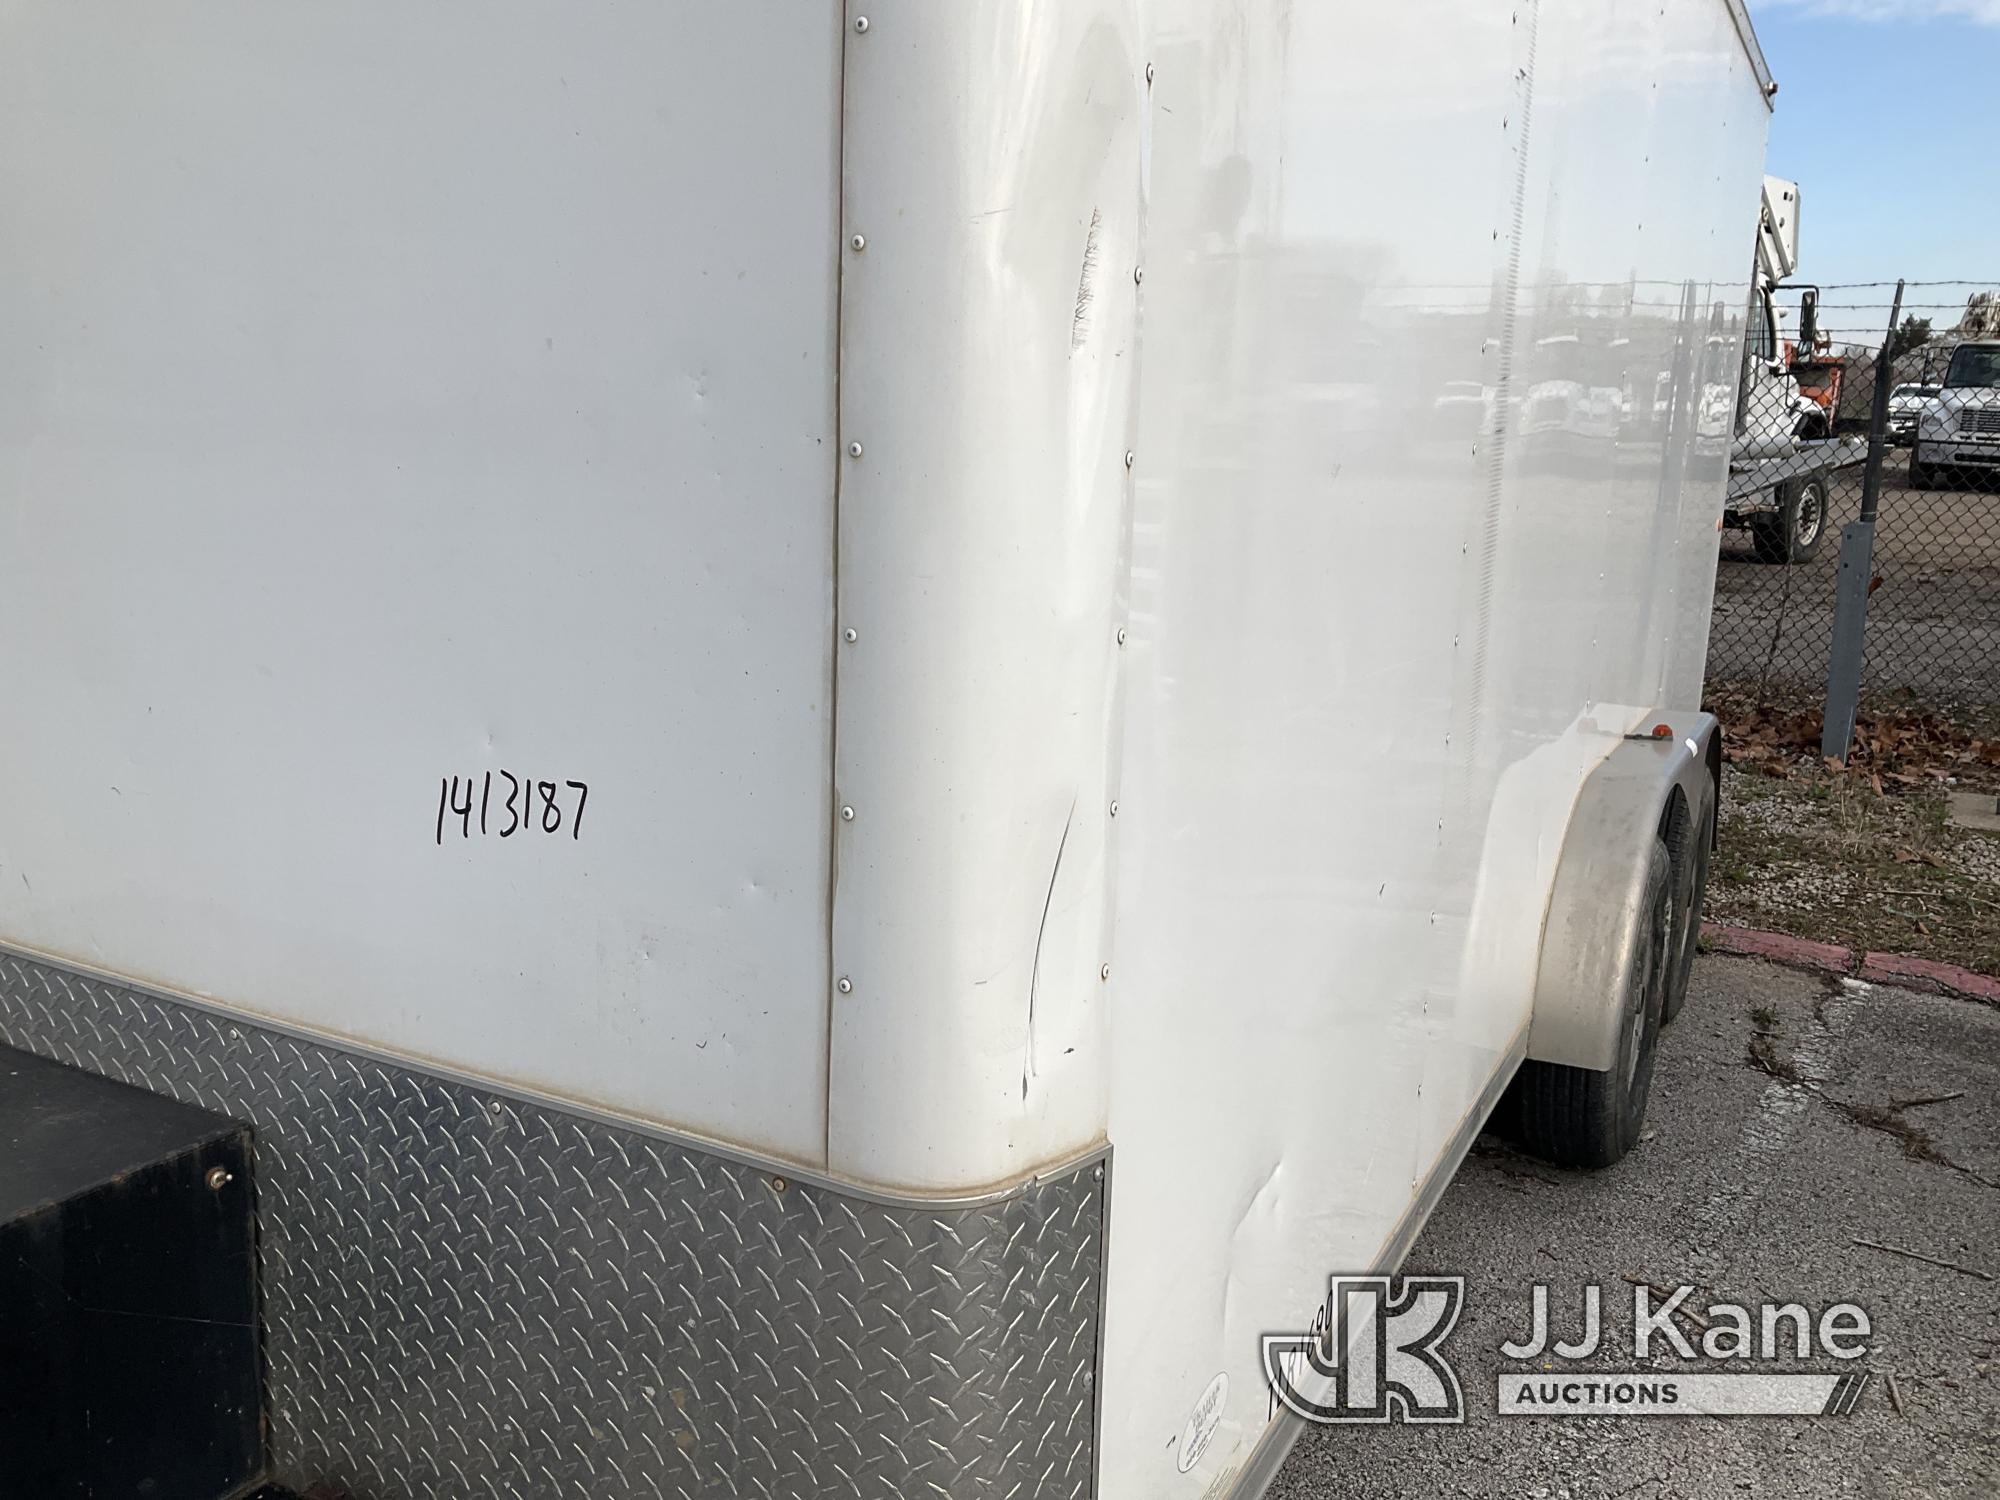 (Kansas City, MO) 2014 Aluminum Trailer Co. QSTB7516 Enclosed Cargo Trailer